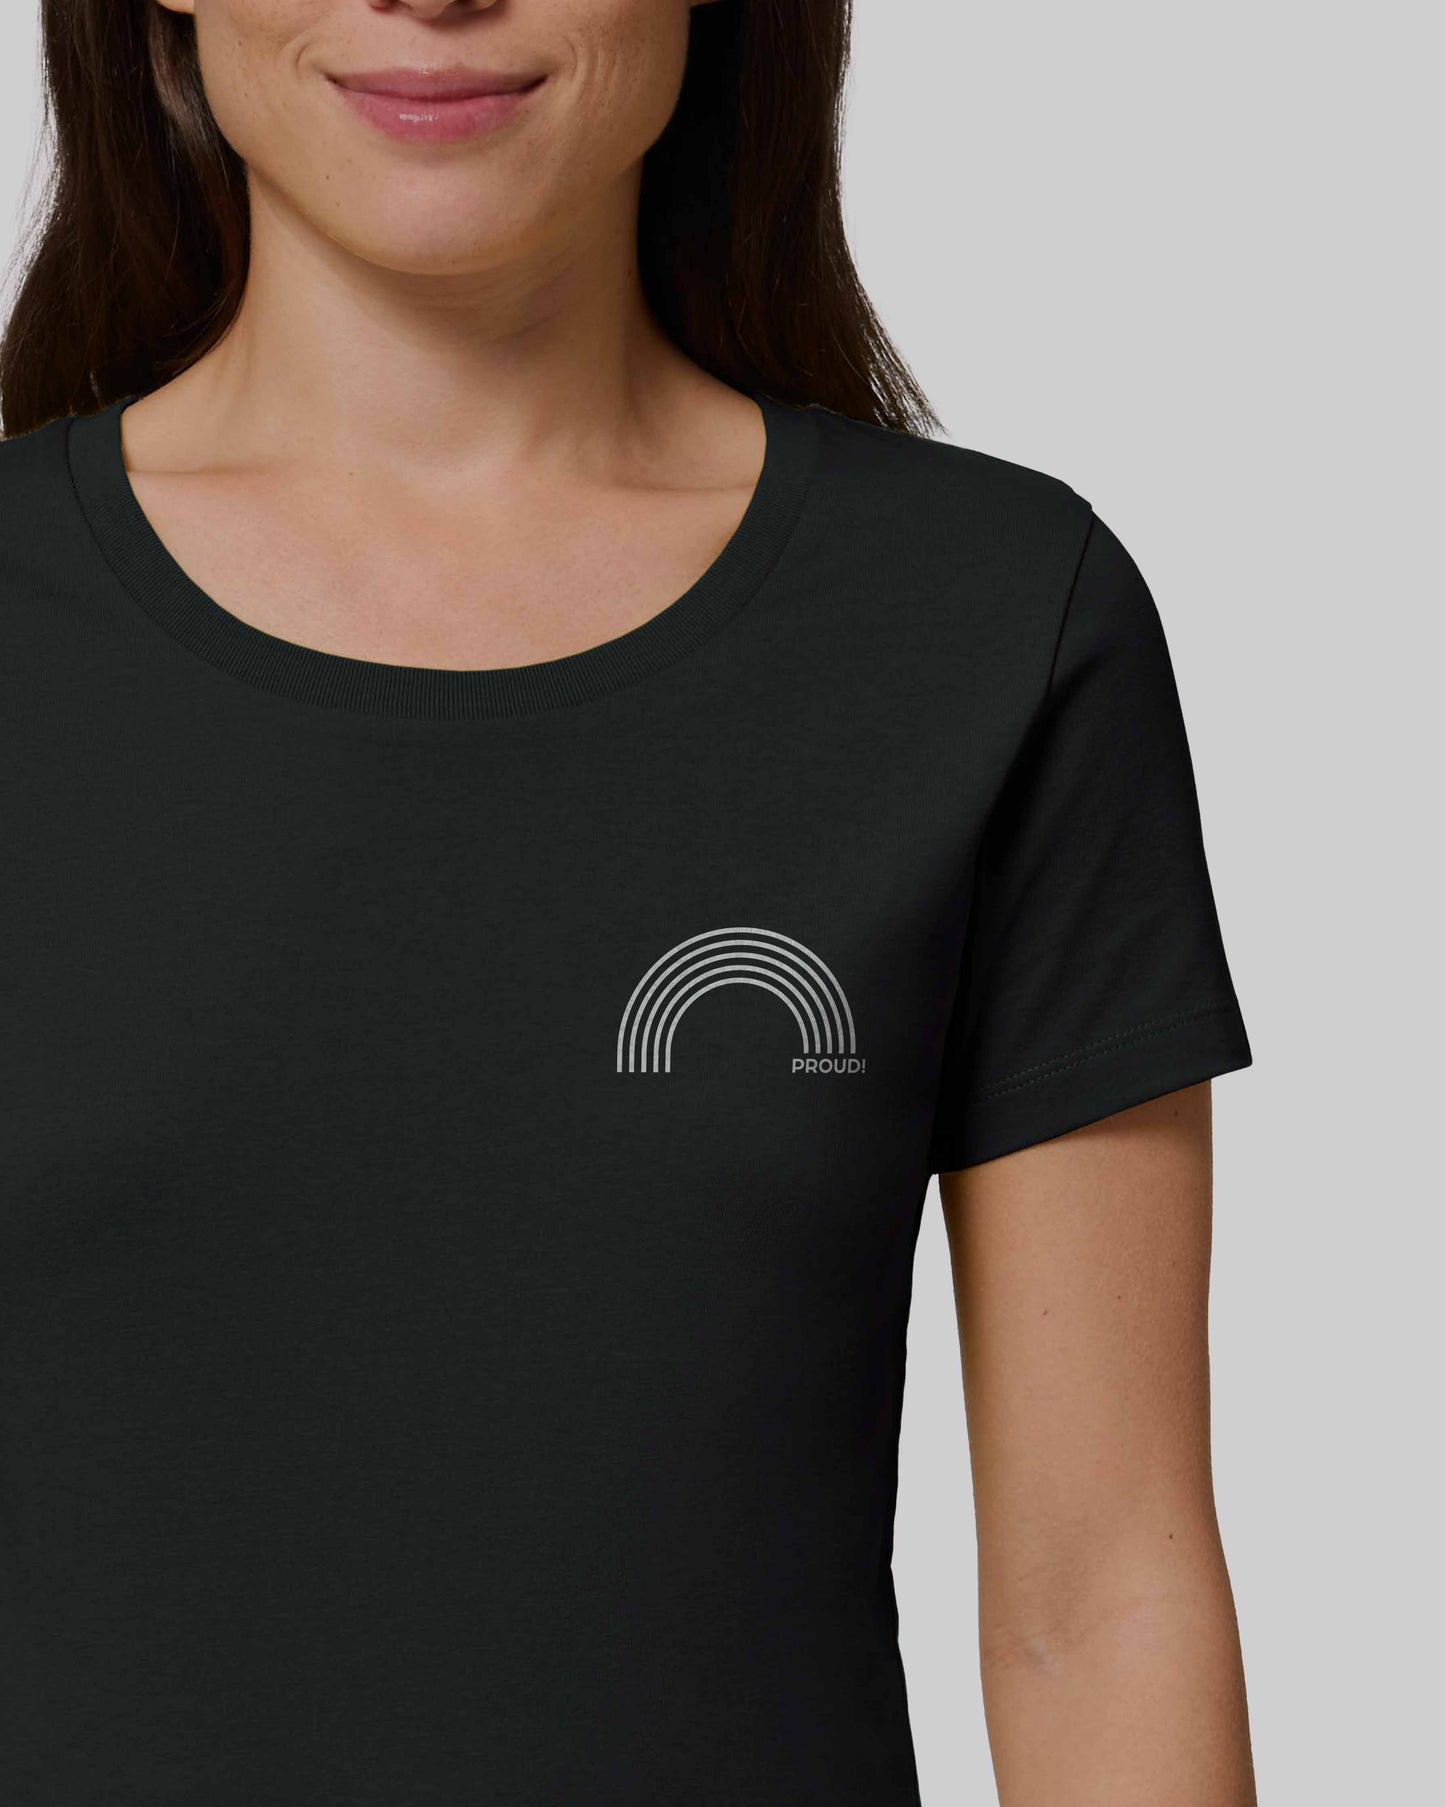 EINHORST® Organic Shirt tailliert in "Schwarz" mit dem Motiv "proud Regenbogen" in der Kombination weißer Regenbogen mit weißer Schrift, Bild von weiblicher Person mit Shirt